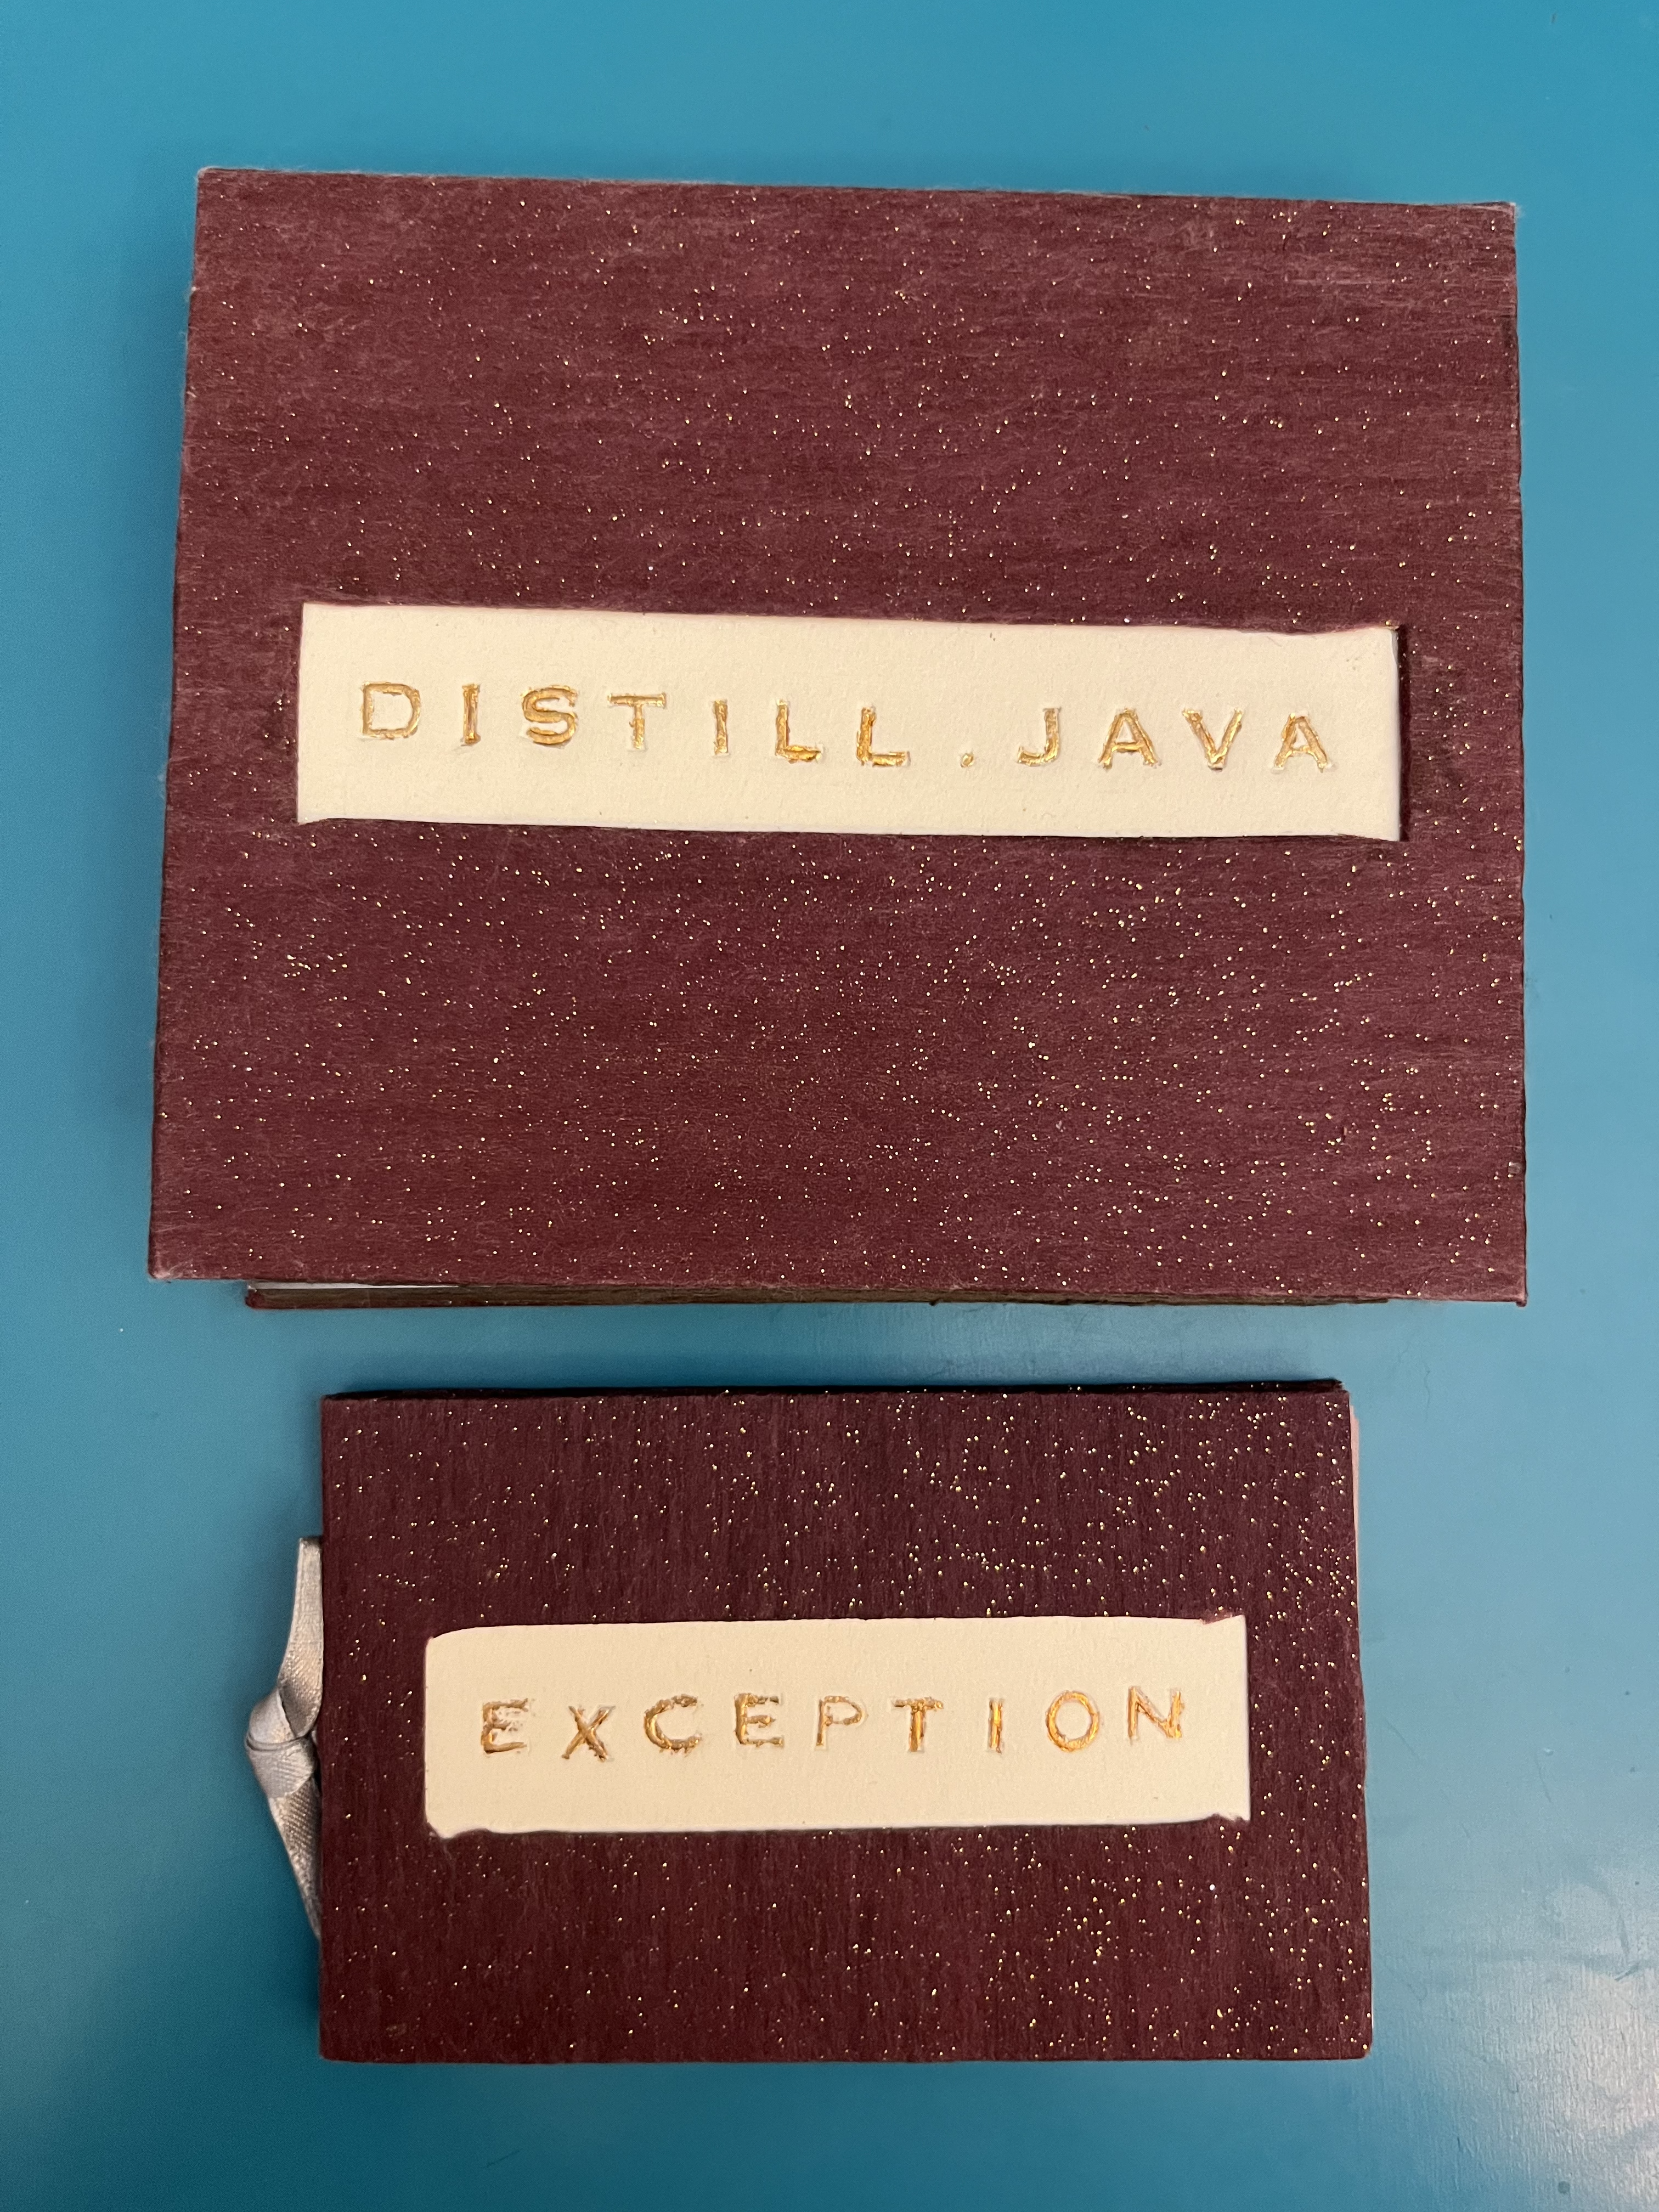 distill.java & exception